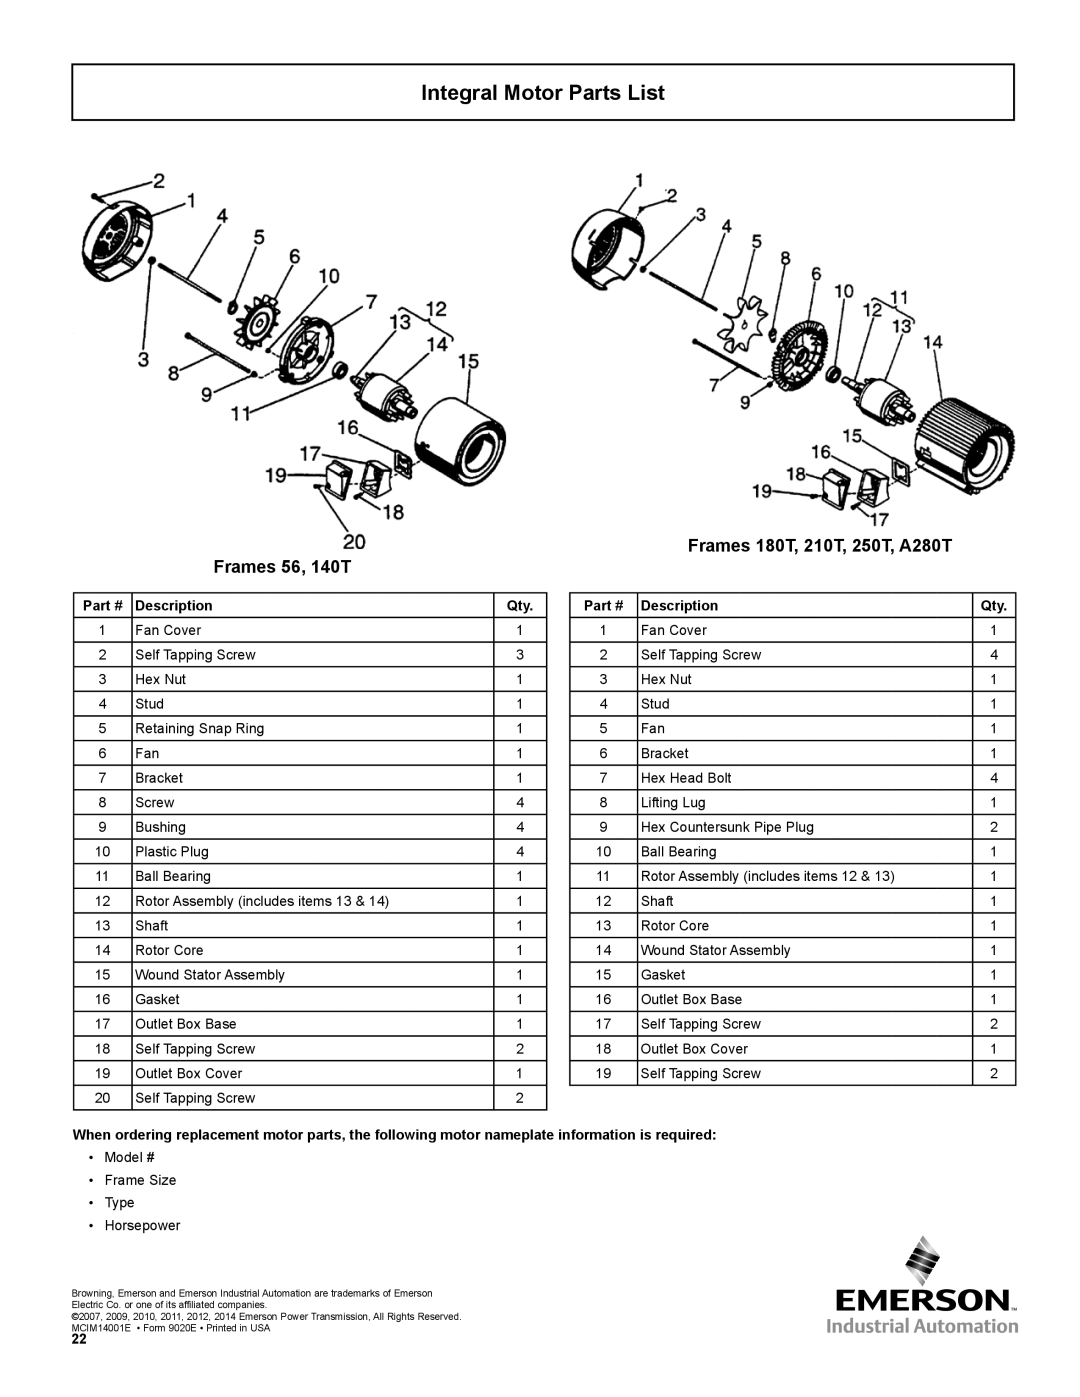 Emerson 3000 Integral Motor Parts List, Frames 180T, 210T, 250T, A280T Frames 56, 140T, Description 